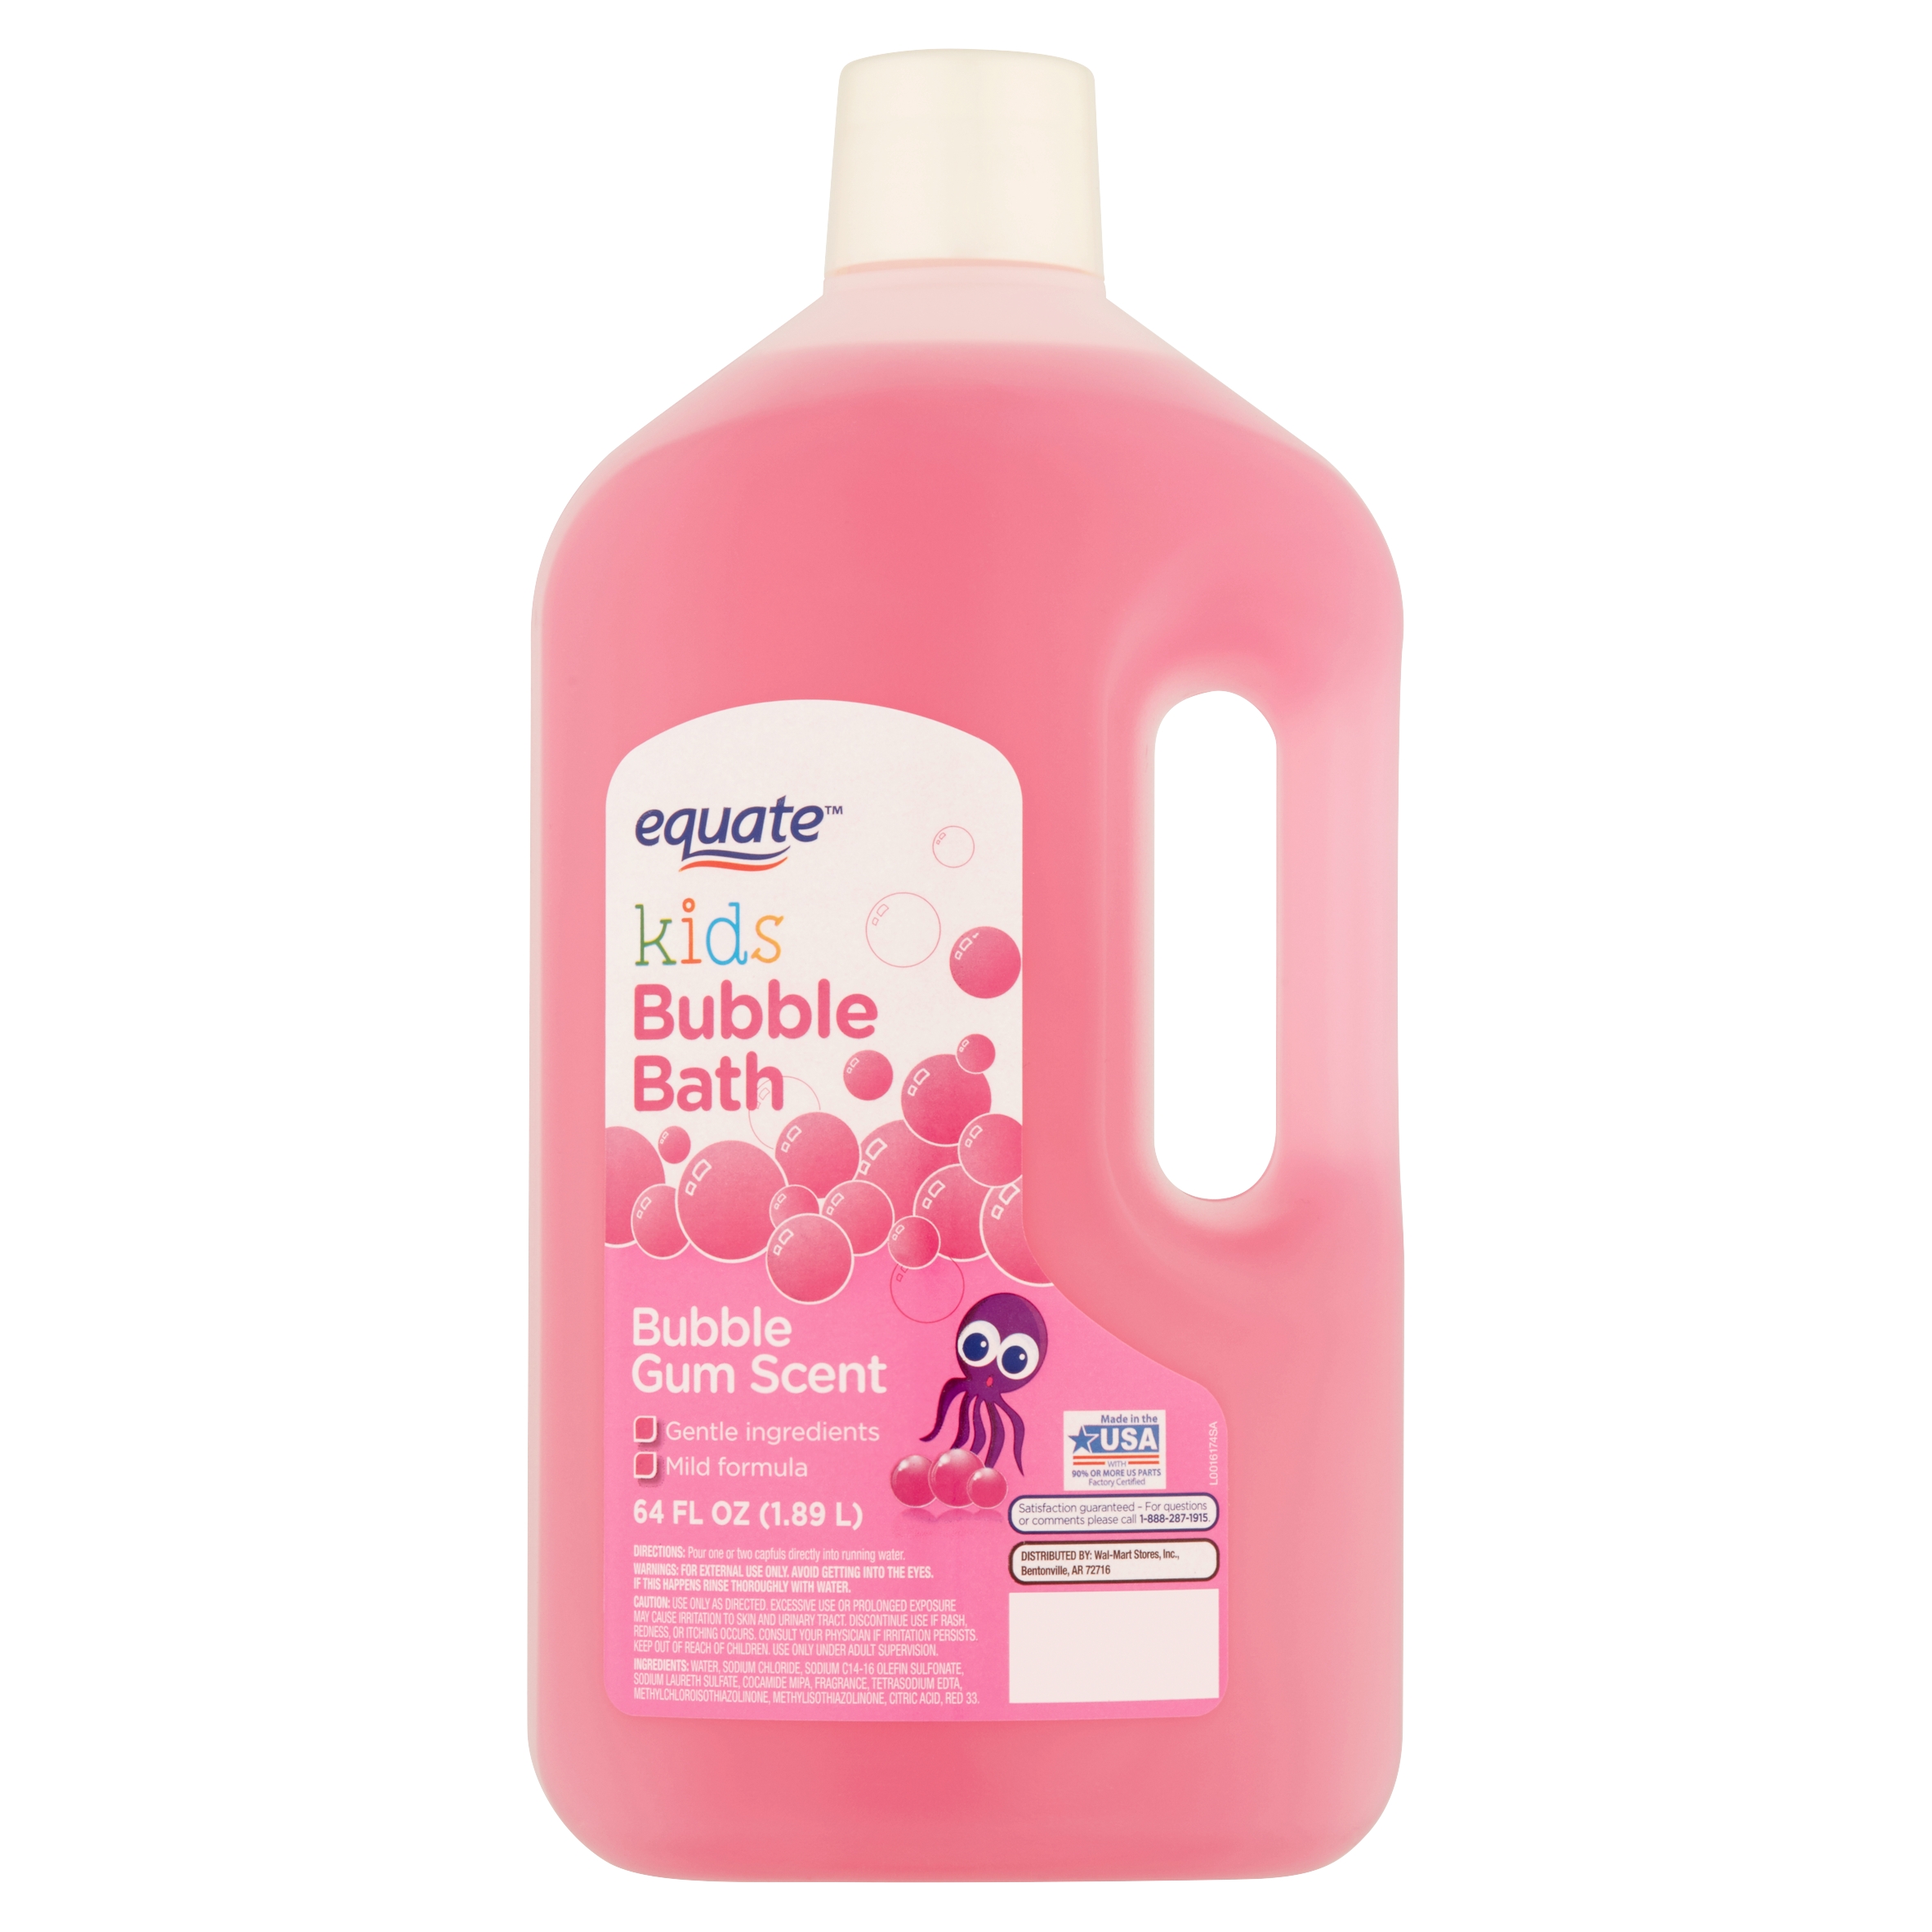 Equate Kids Bubble Gum Scent Bubble Bath, 64 fl oz